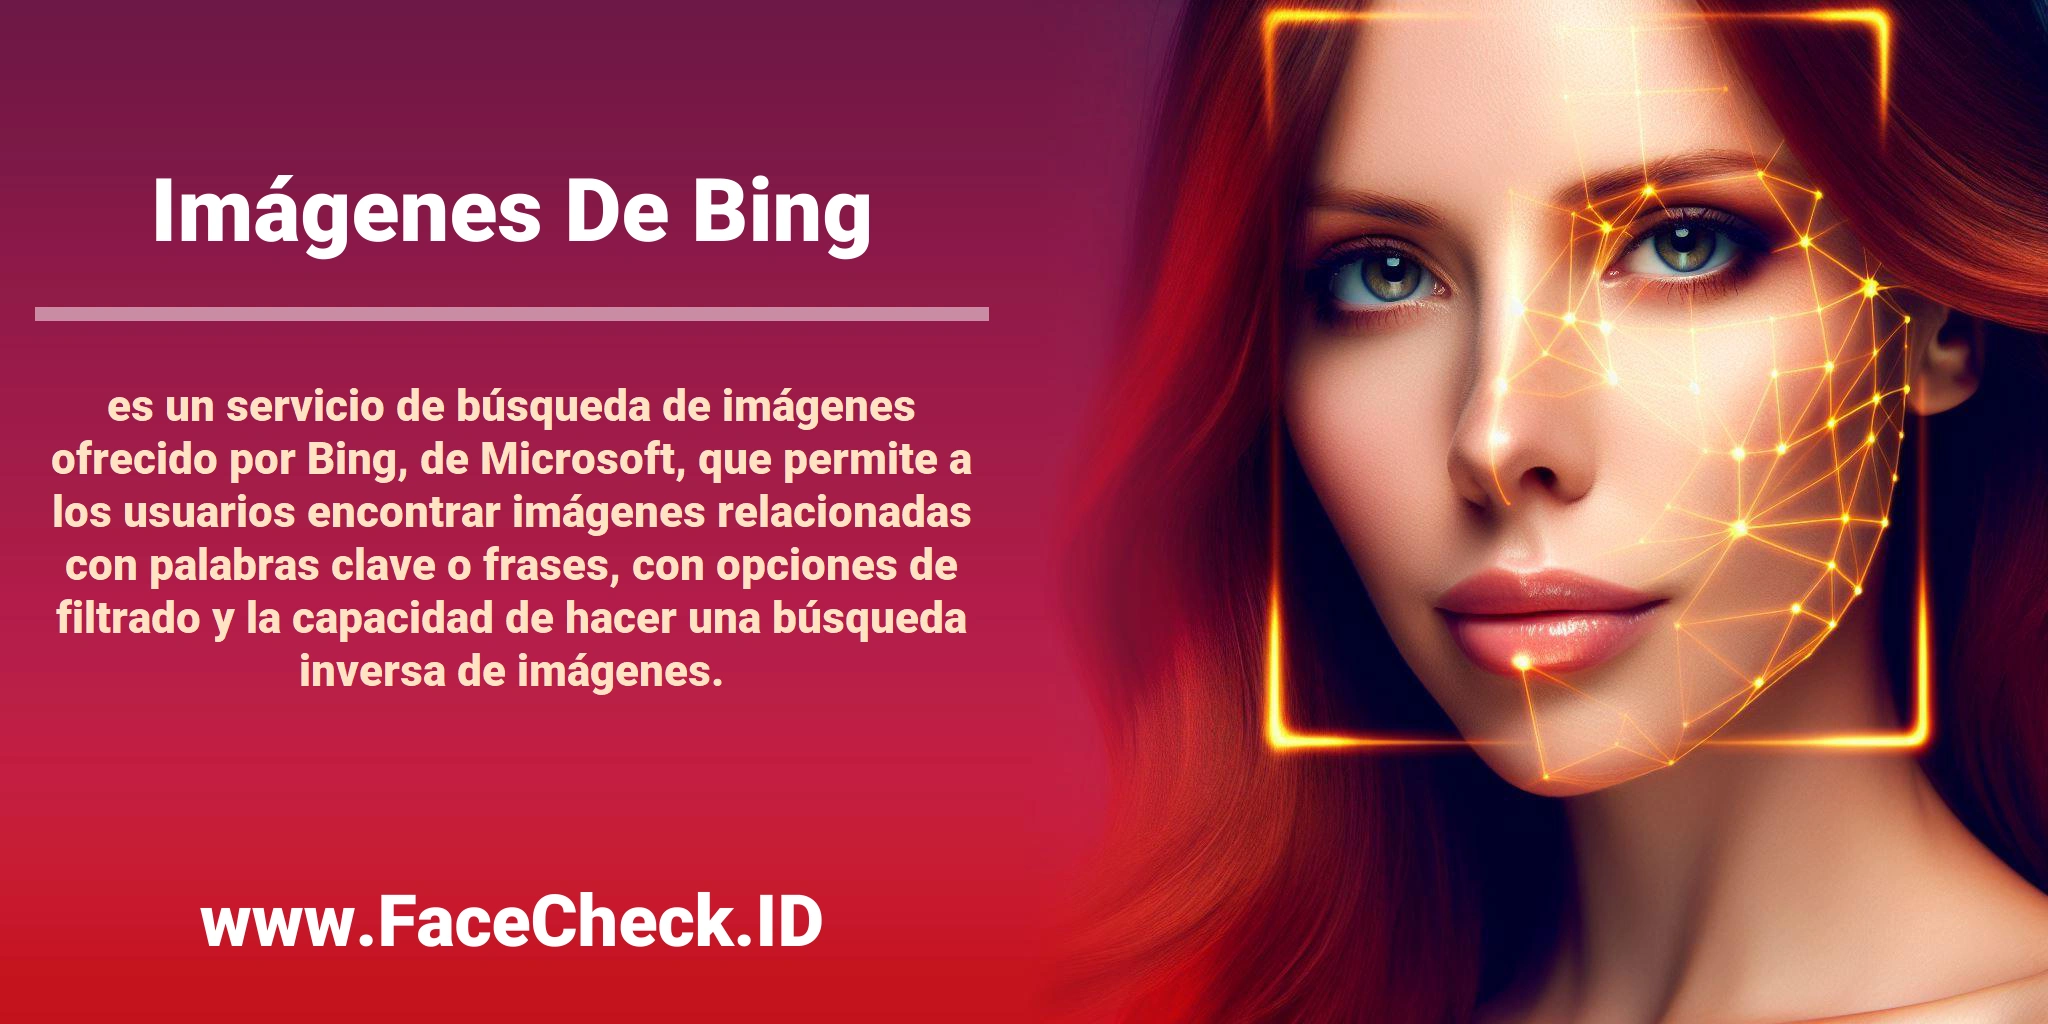 <b>Imágenes De Bing</b> es un servicio de búsqueda de imágenes ofrecido por Bing, de Microsoft, que permite a los usuarios encontrar imágenes relacionadas con palabras clave o frases, con opciones de filtrado y la capacidad de hacer una búsqueda inversa de imágenes.